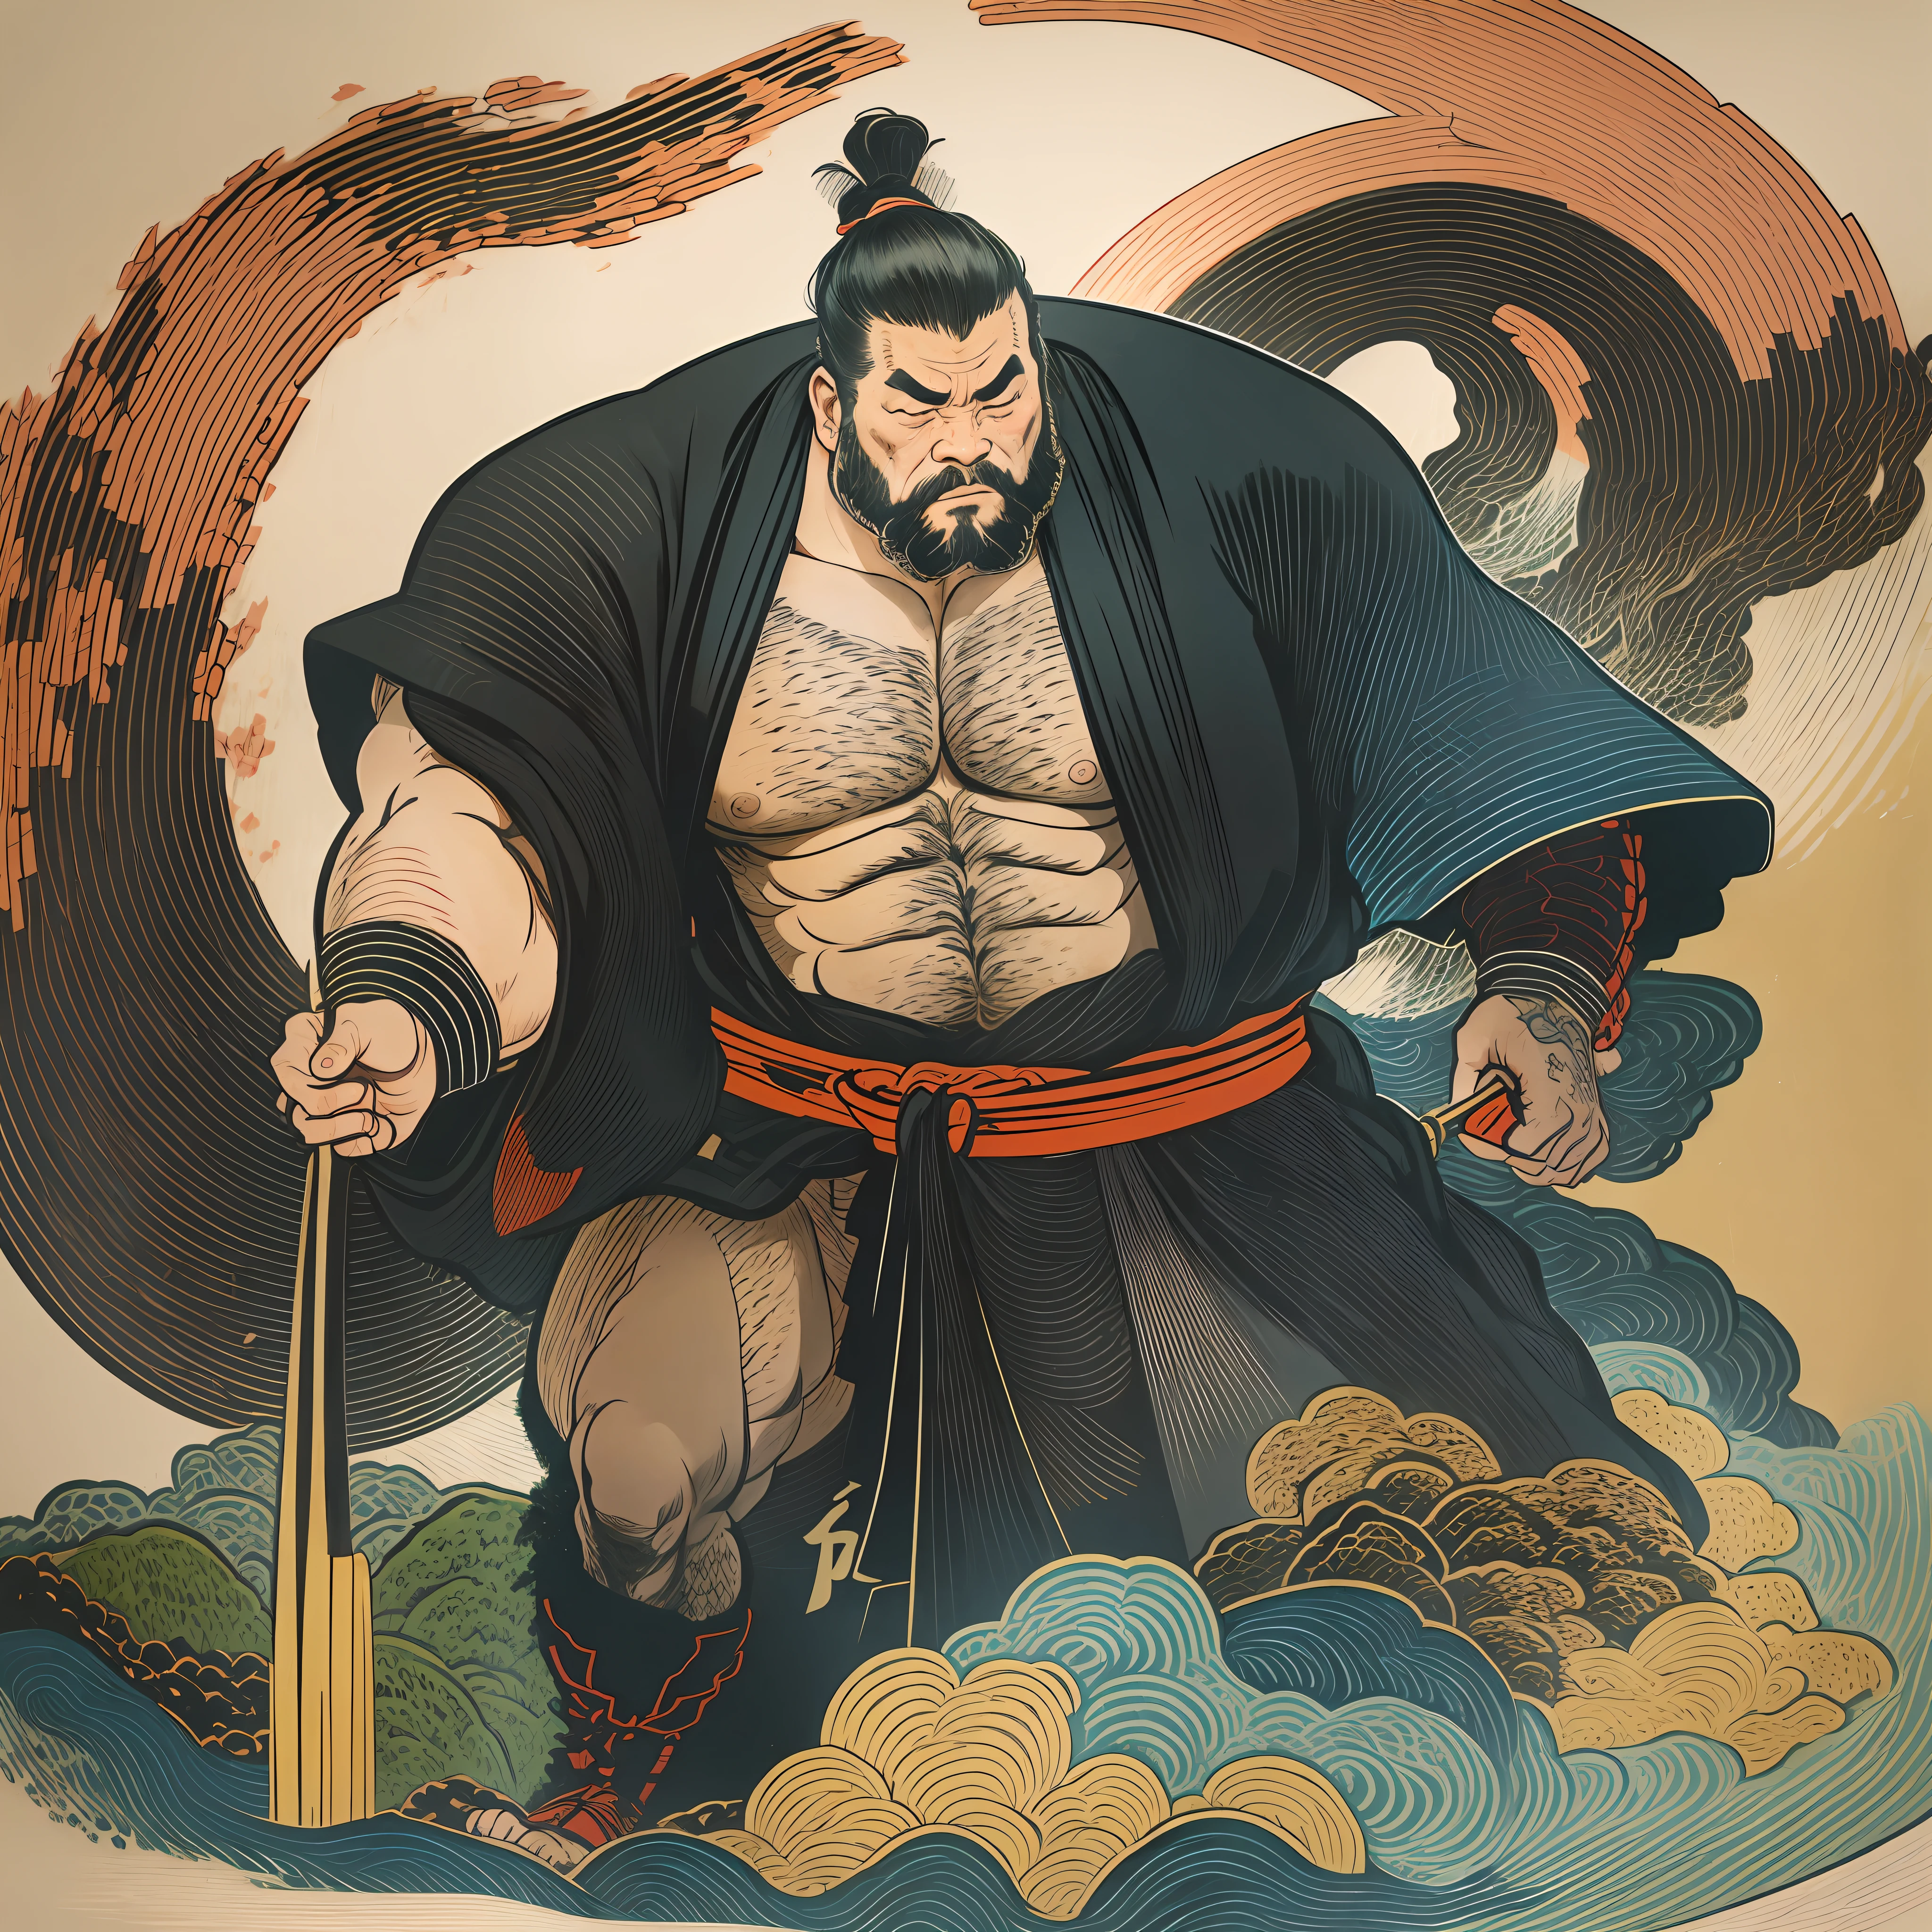 Es handelt sich um eine Ganzkörperbemalung mit natürlichen Farben und Strichzeichnungen im Stil des Ukiyo-e. Ein japanischer Samurai mit großem Körper wie ein starker Mann, keine Körperbehaarung, Keine Tätowierungen. Er hat einen hübschen und rauen Gesichtsausdruck, mit kurzen schwarzen Haaren und einem kurzen, gestutzter Bart. Ungefähr 30er Jahre. Sein Oberkörper sollte in einen schwarzen Kimono gezeichnet sein, mit einem knielangen Hakama in fließender Form, die im Wind flattert. Japan hält ein Schwert in seiner rechten Hand. Erleben Sie den donnernden hochauflösenden Ukiyo-e-Stil dieses Meisterwerks in höchster Qualität